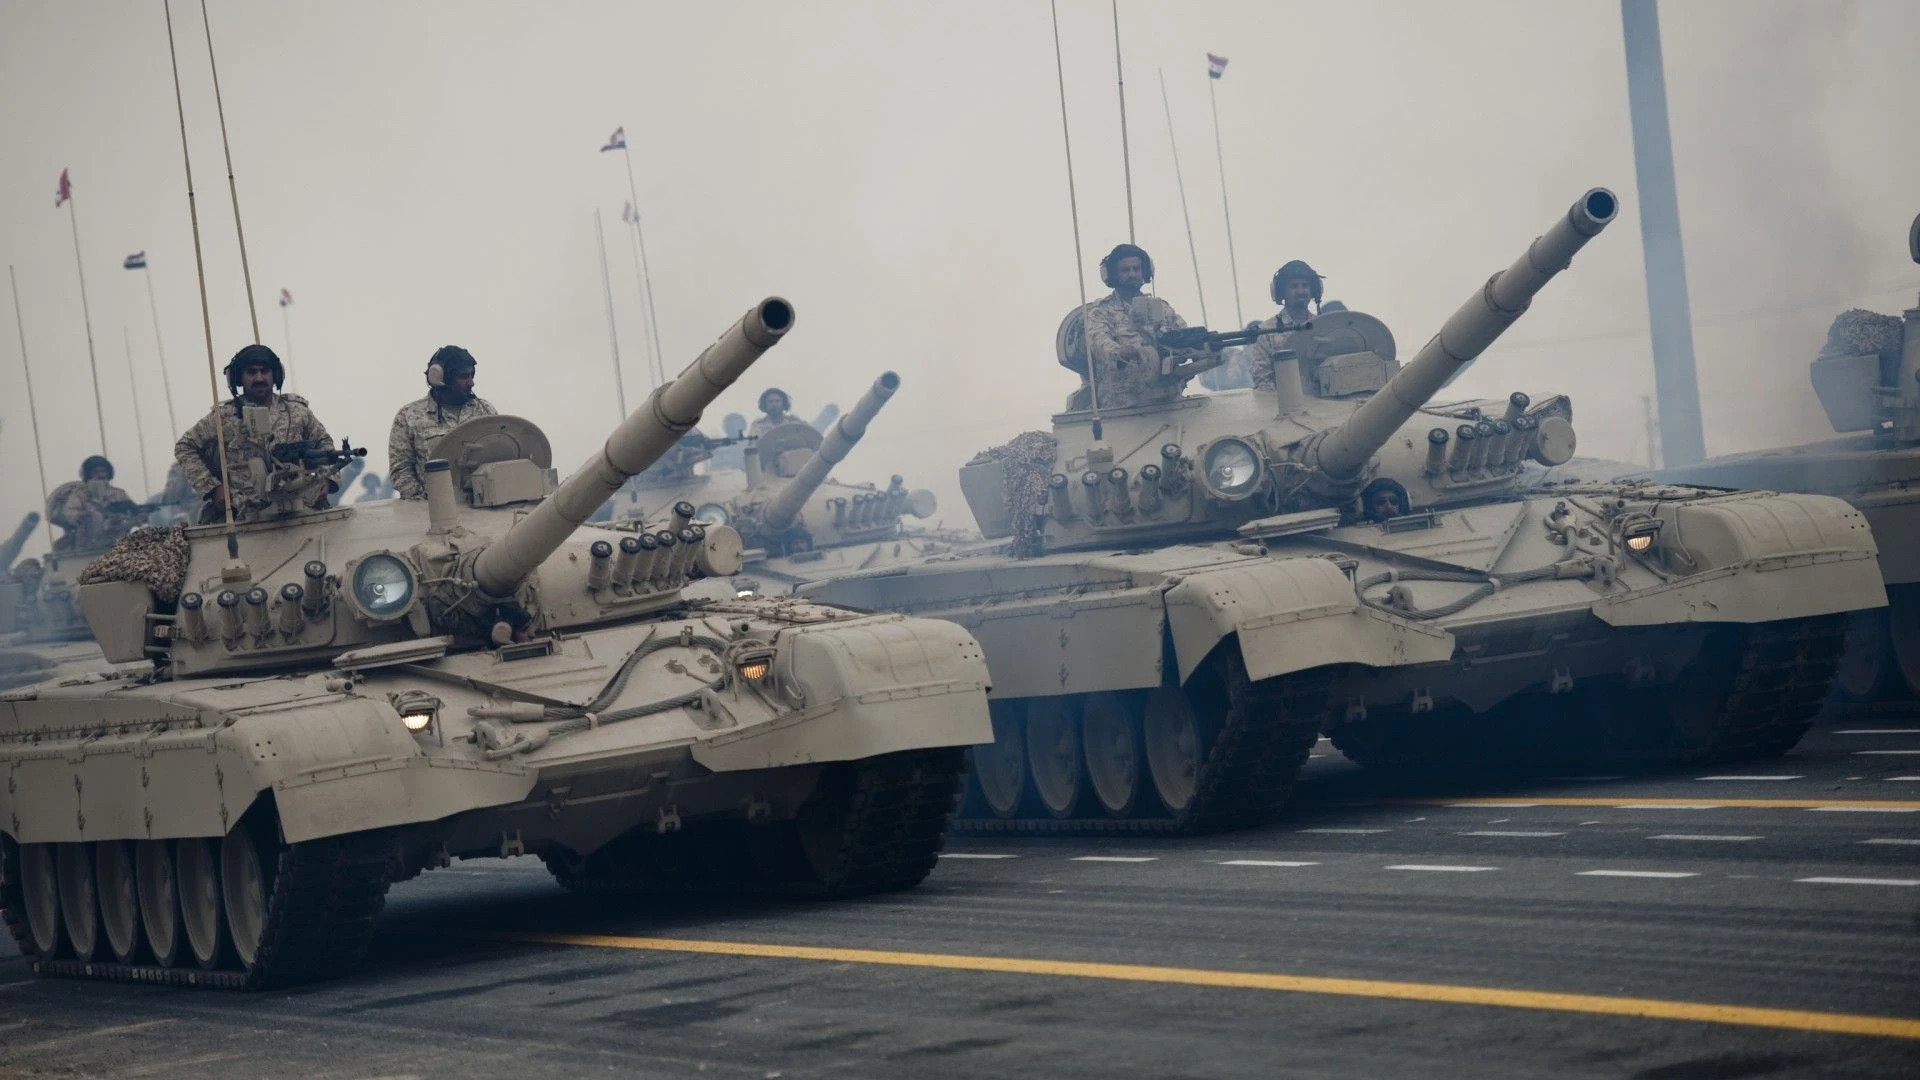 Кувейт начал передавать Украине танки M-84, - СМИ 